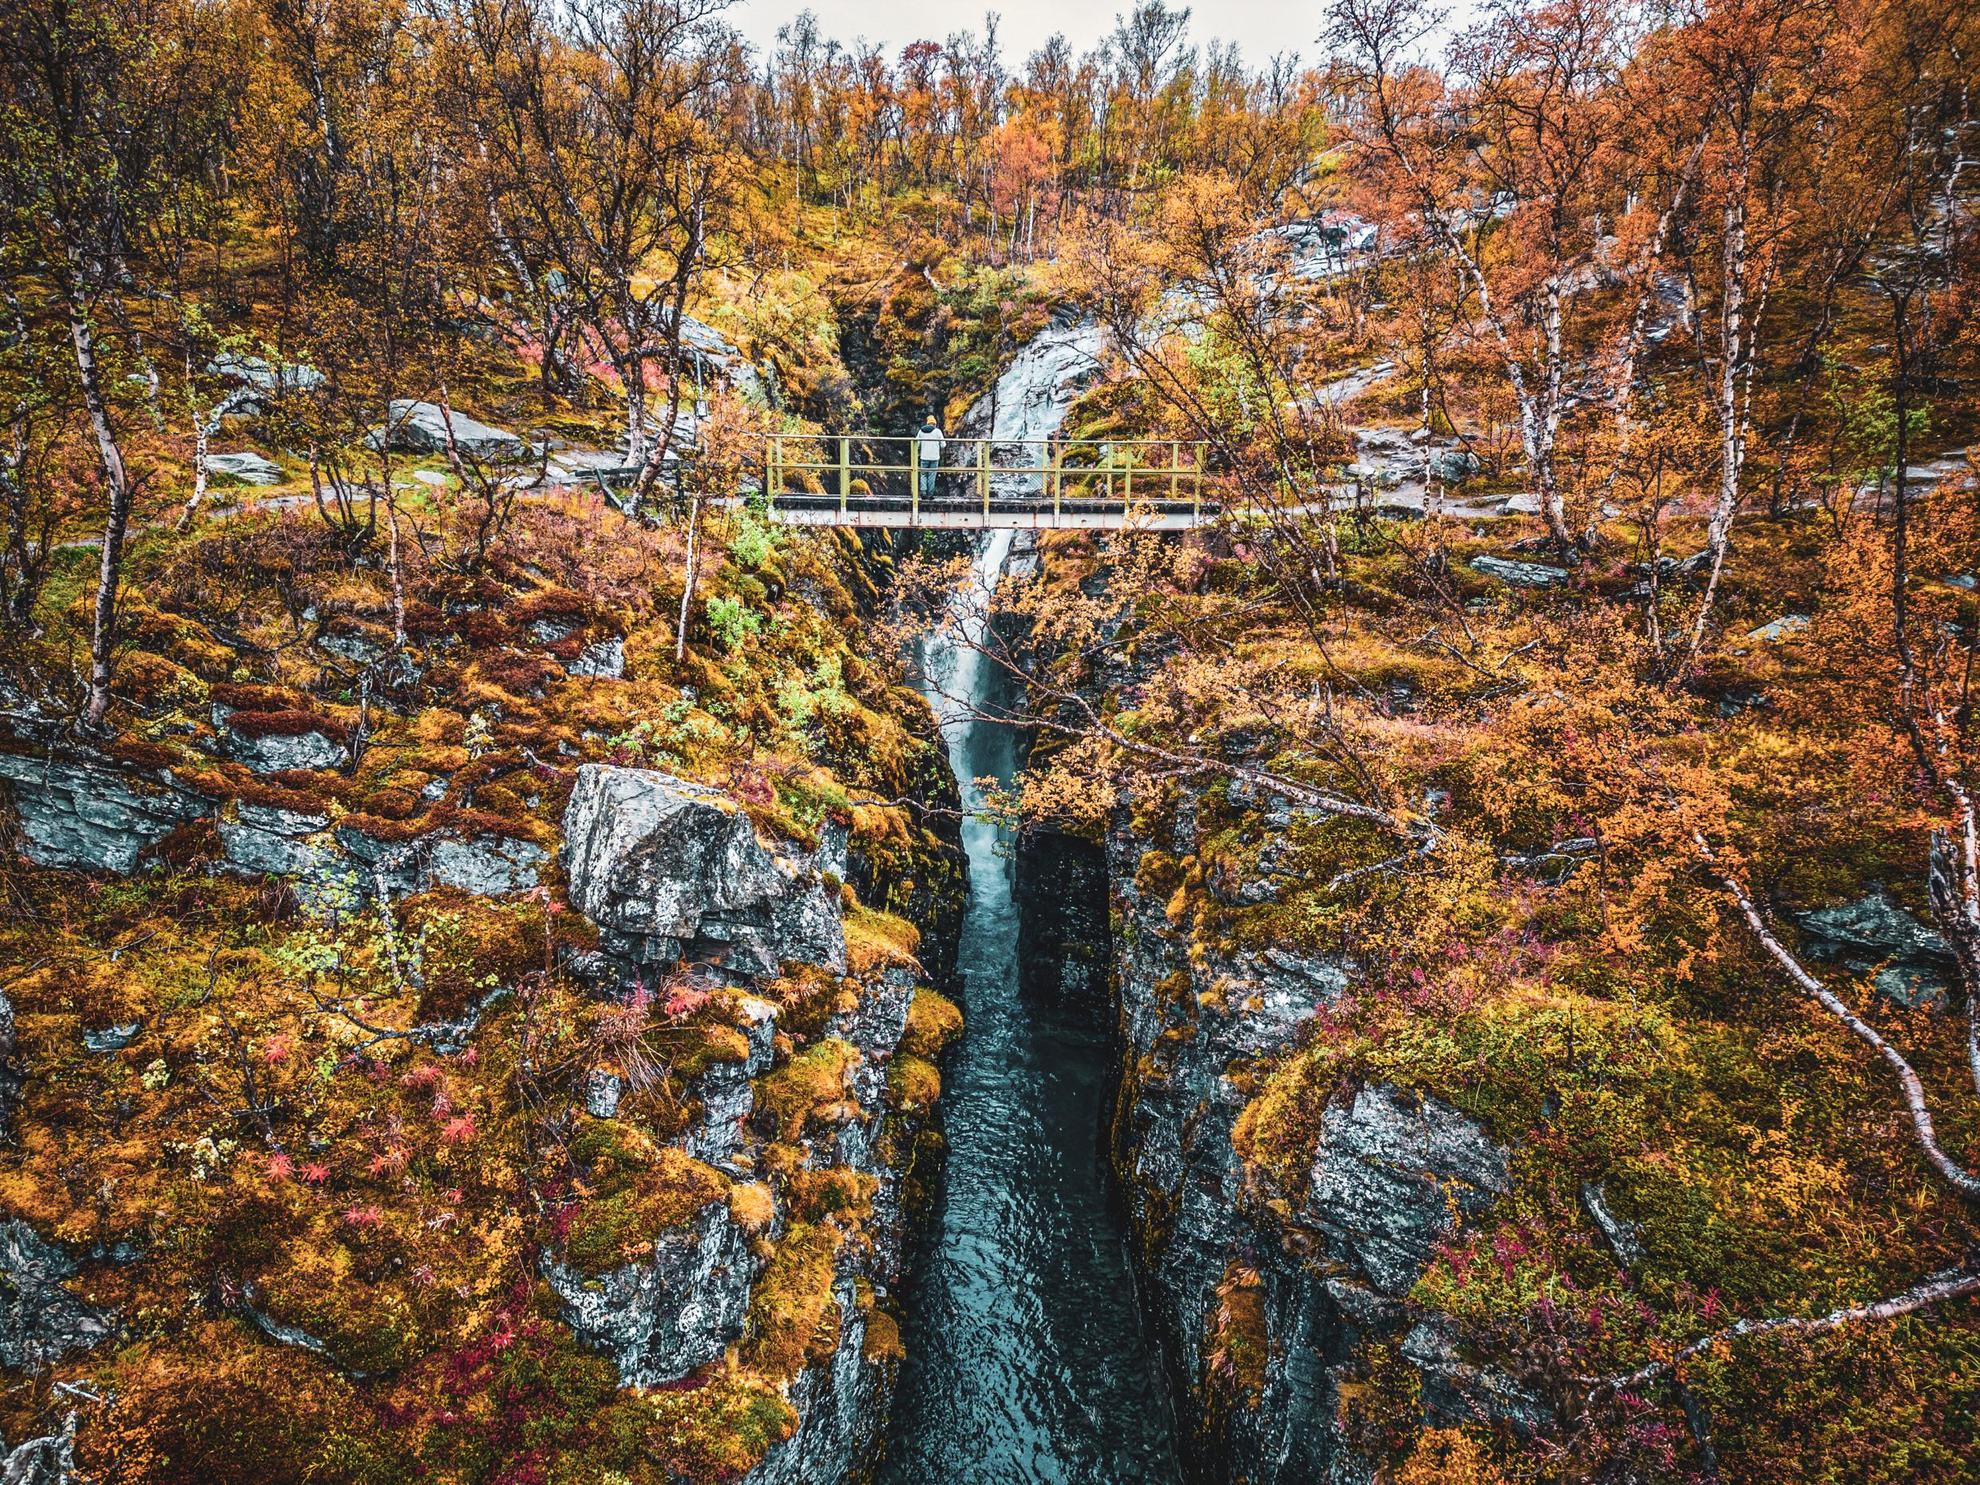 Une personne se tient debout sur un petit pont et regarde une chute d'eau pendant l'automne.